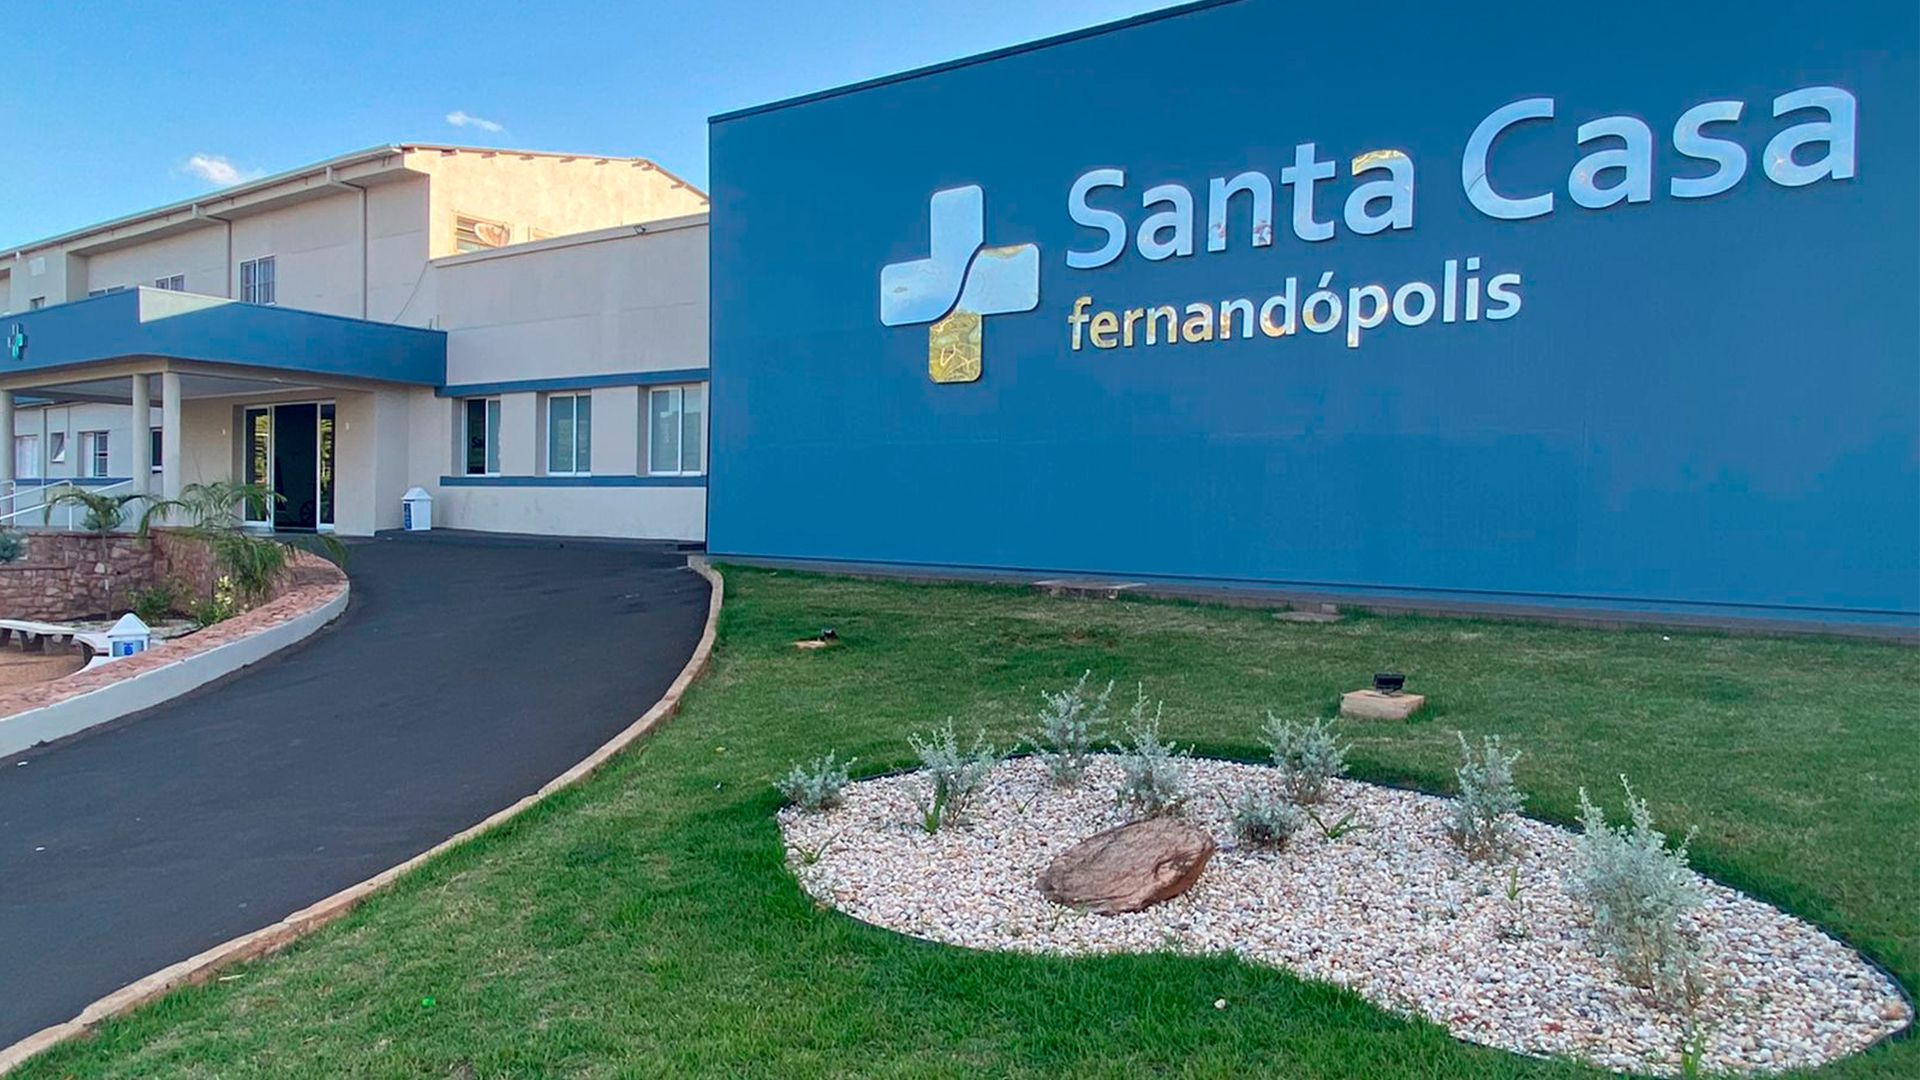 Prefeitura de Fernandópolis irá repassar R$ 2 milhões para Santa Casa garantir atendimento médico